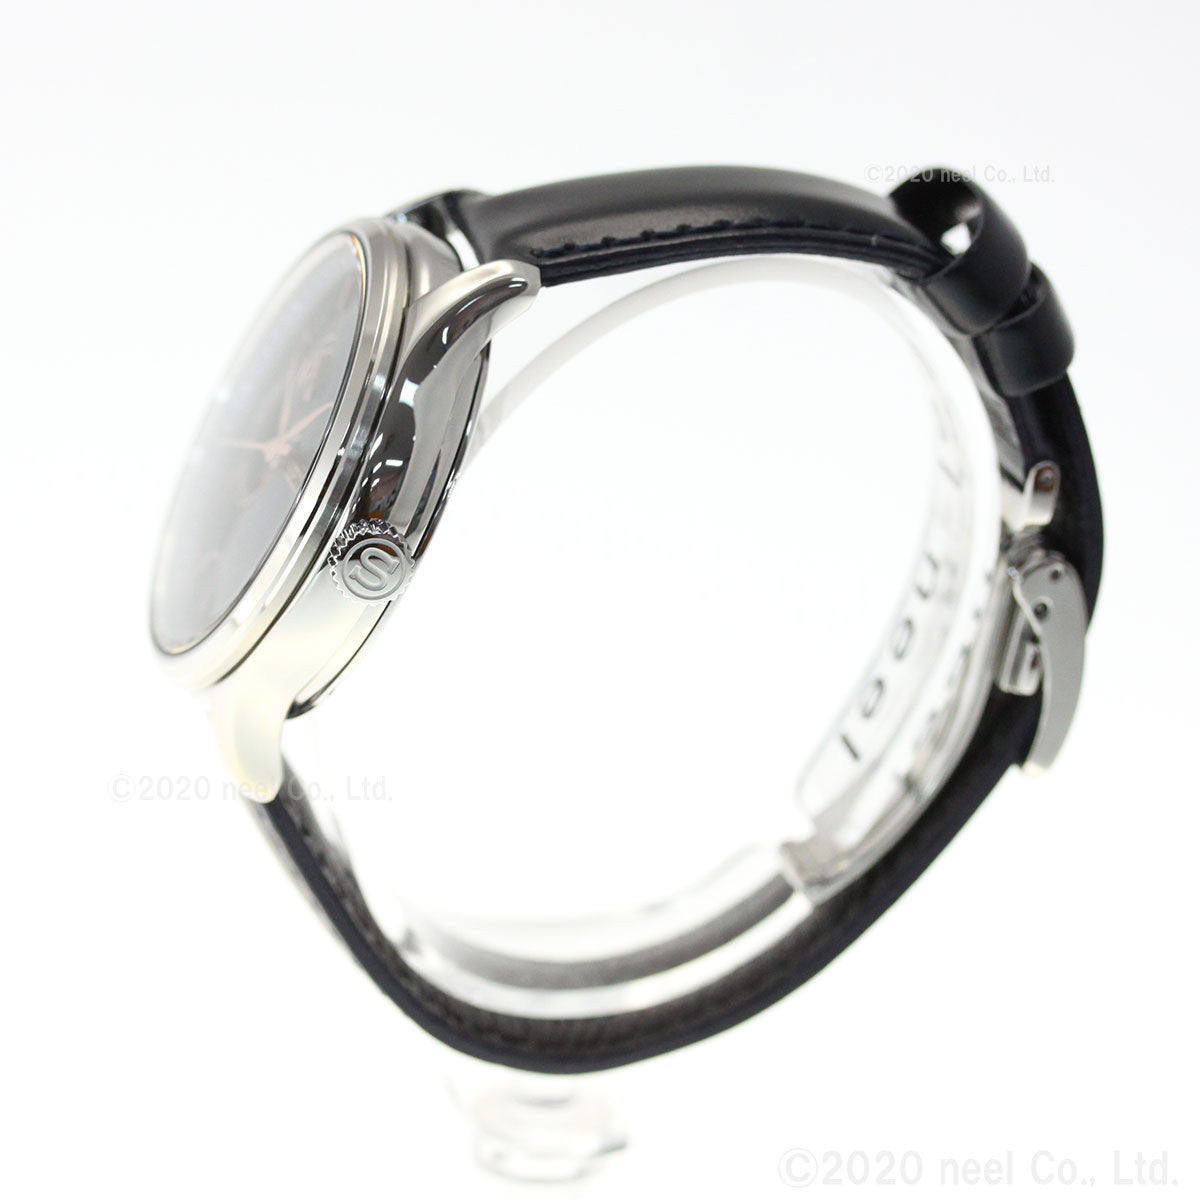 セイコー プレザージュ SEIKO PRESAGE 自動巻き メカニカル 腕時計 メンズ SARY187